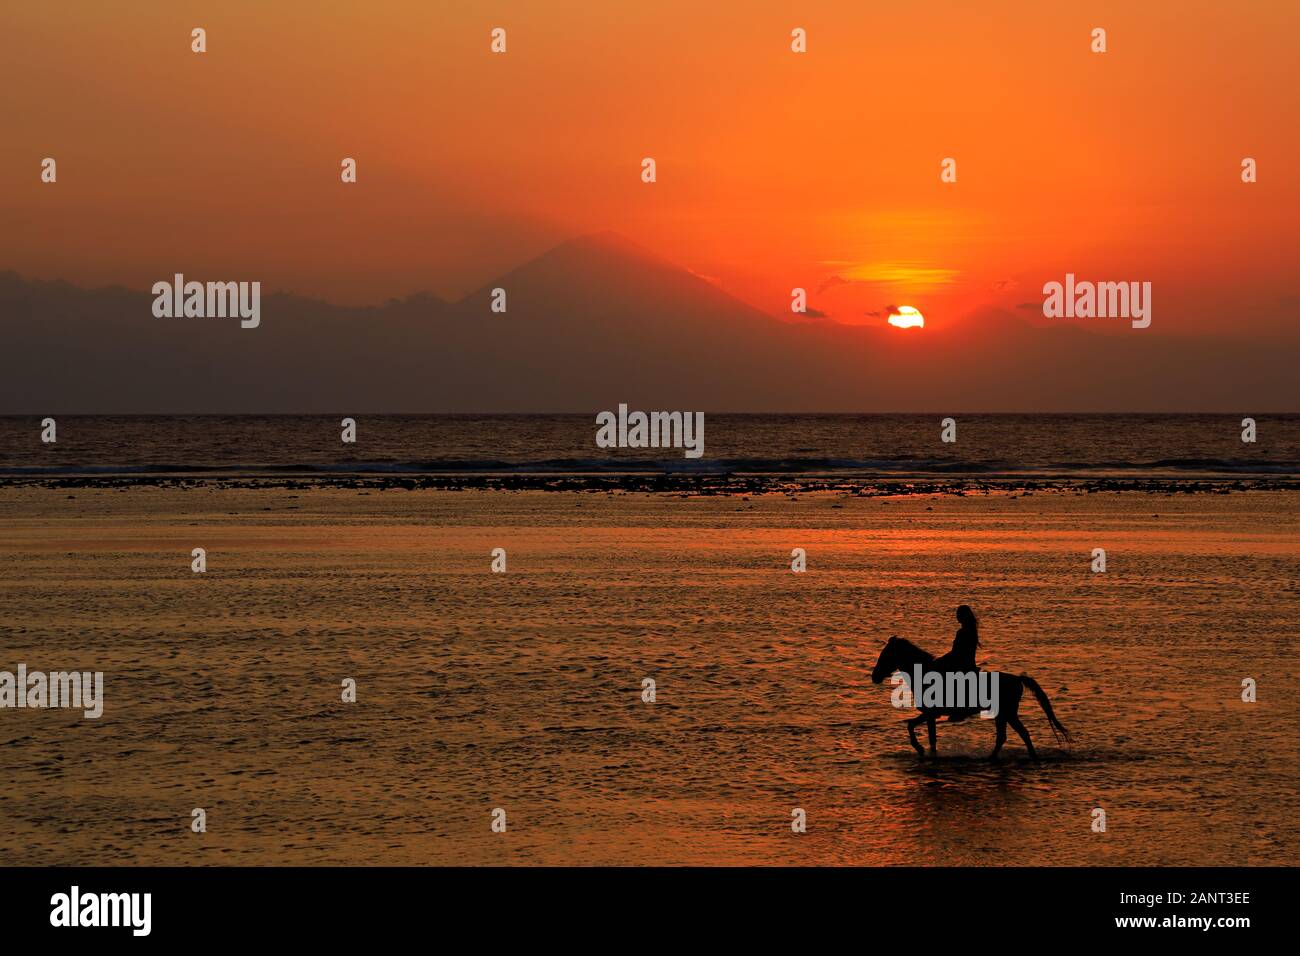 Silhouette di un cavallo e cavaliere in acque poco profonde su una spiaggia panoramica al tramonto Foto Stock